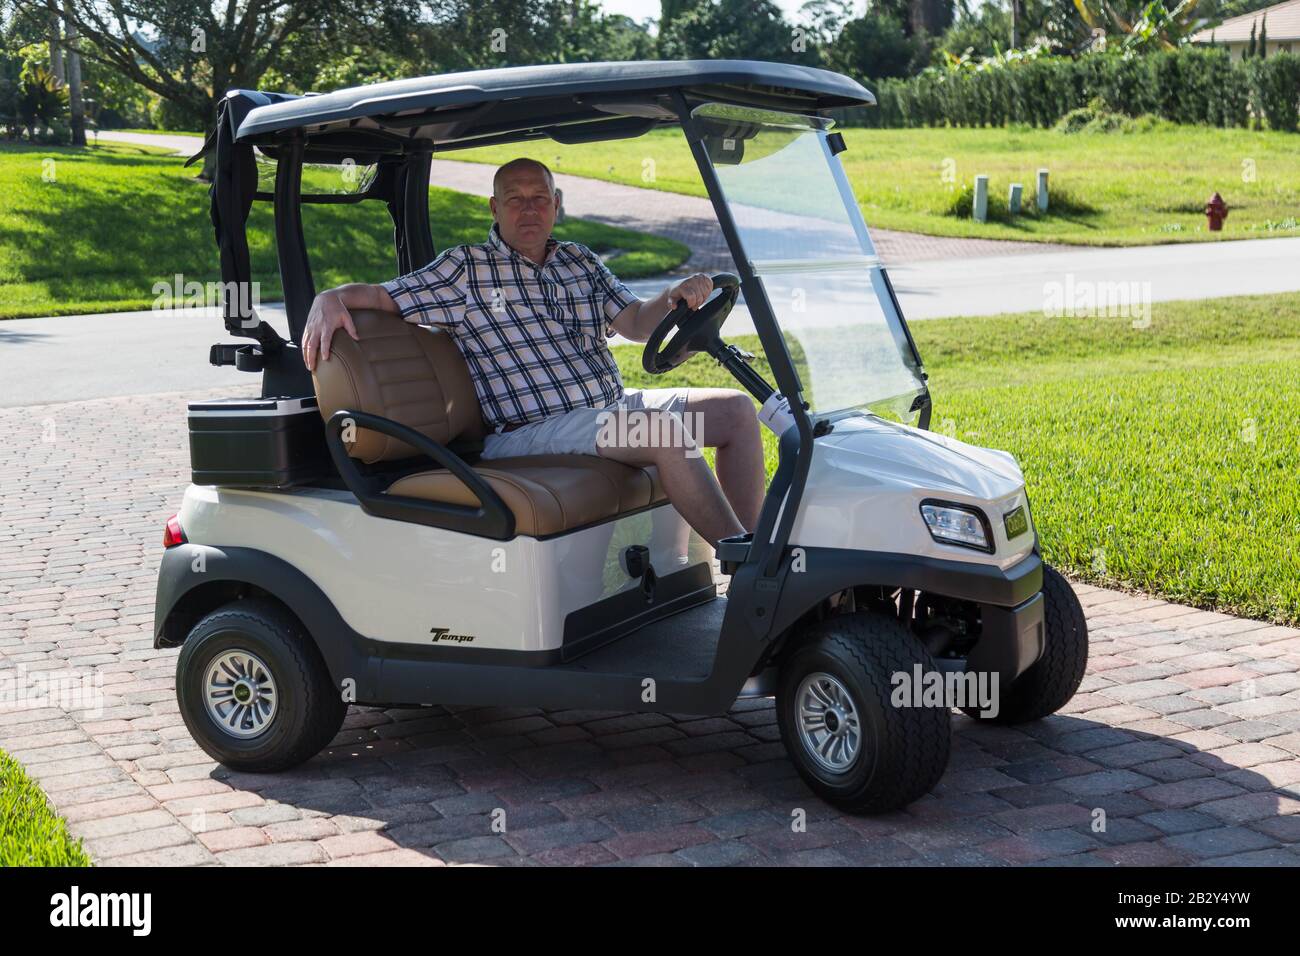 Un hombre con una camisa de cuadros y pantalones cortos se sienta en un  carrito de golf Club Car Tempo en la entrada de ladrillo de una casa de  Palm City, Florida